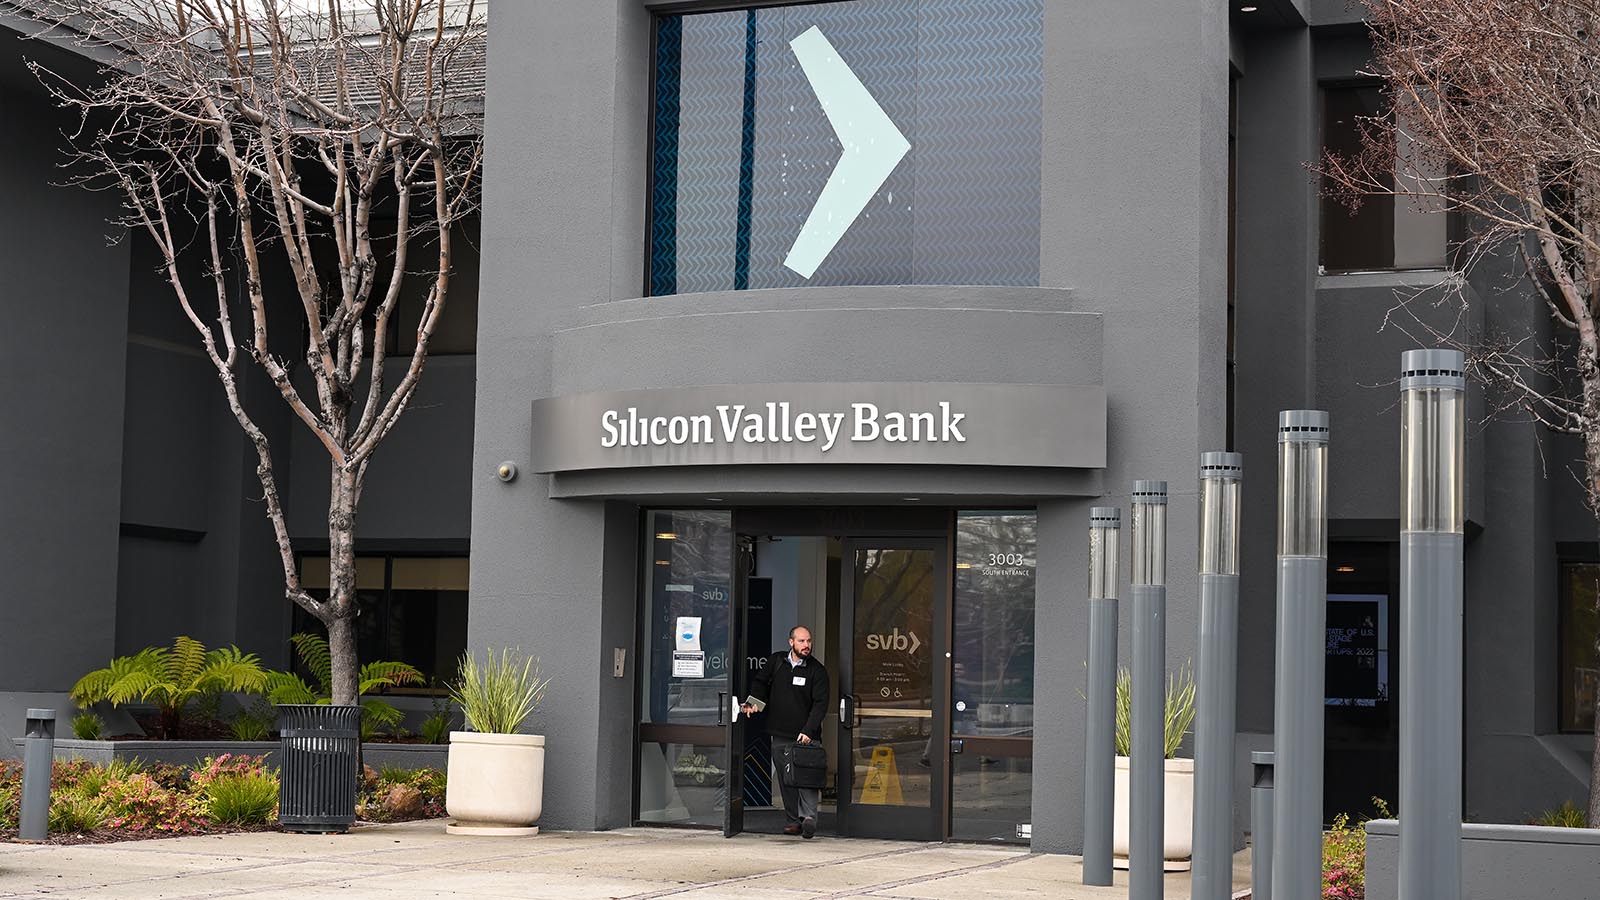     silicon valley bank   